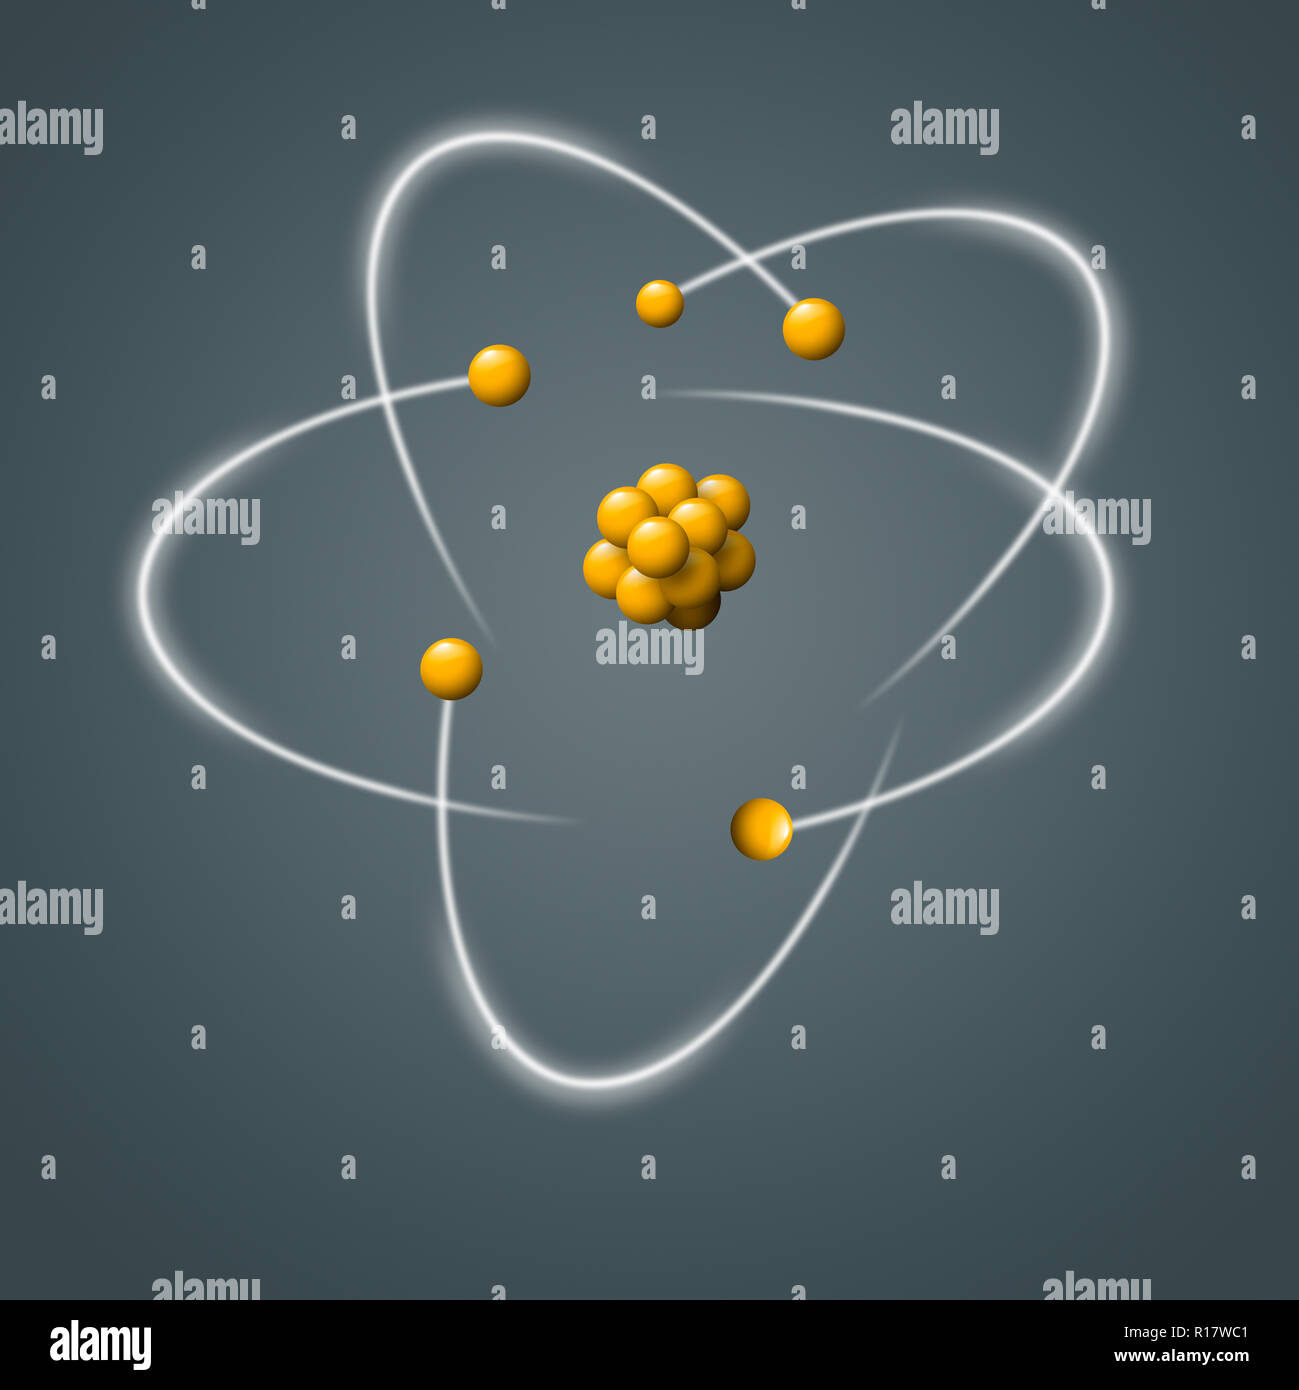 Giallo particelle atomiche circondato da elettroni in movimento su uno sfondo grigio, immagine digitale Foto Stock